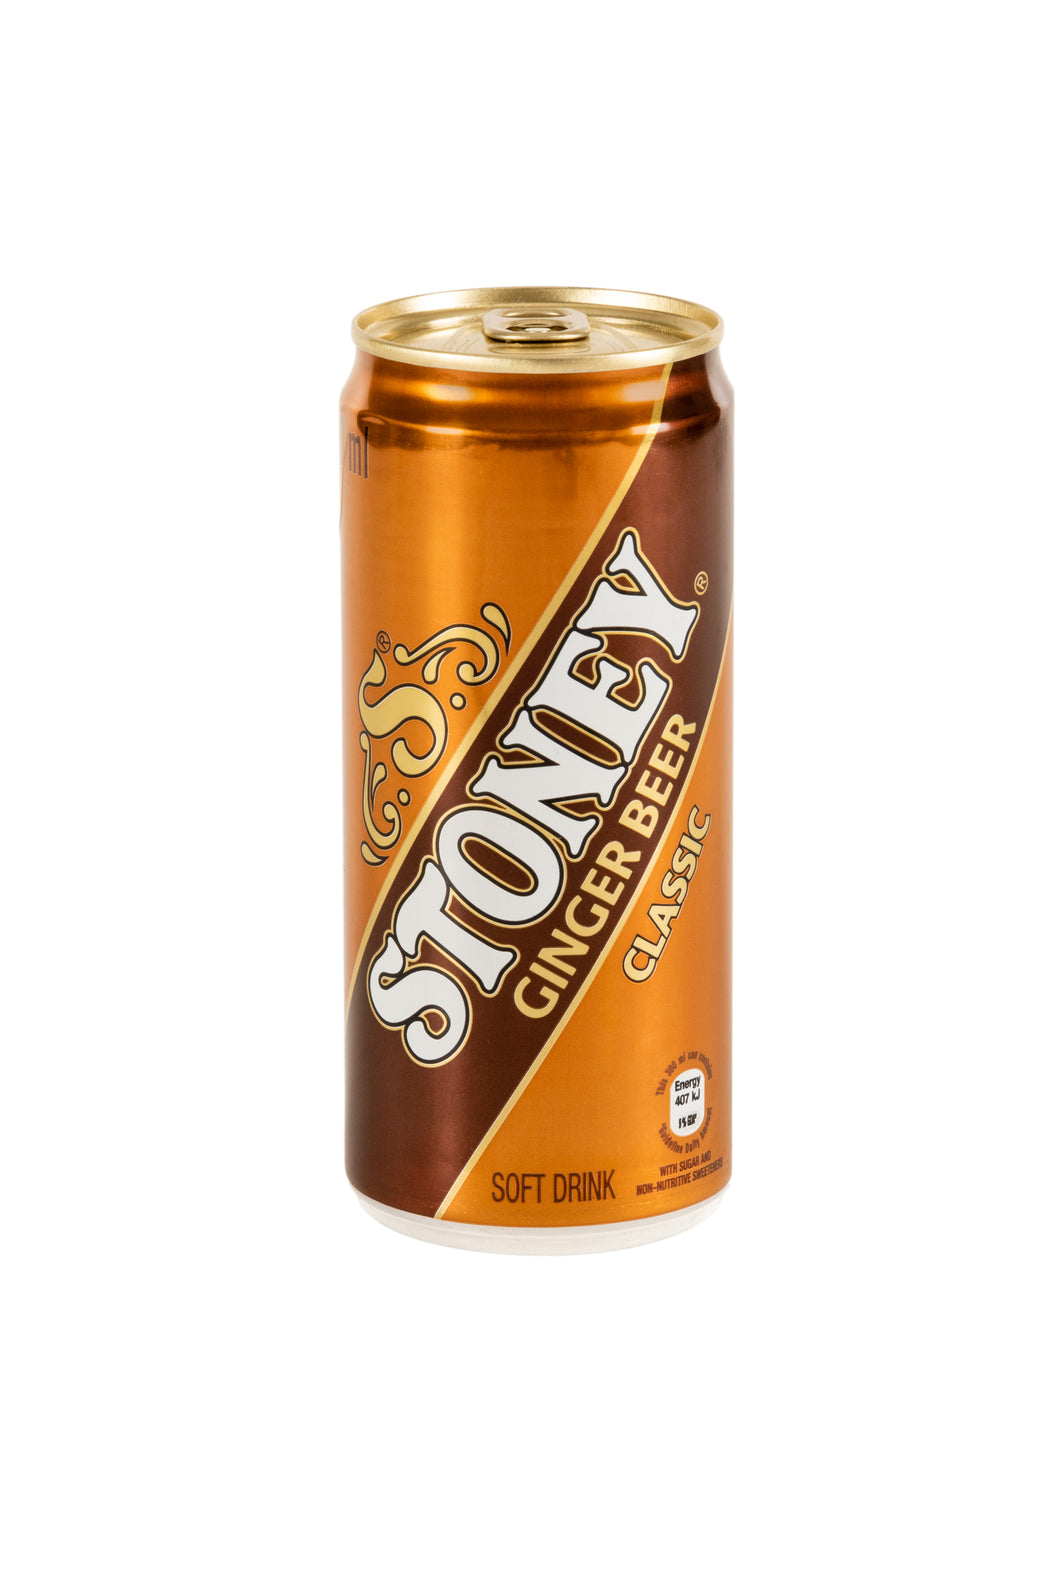 Stoney Ginger Beer